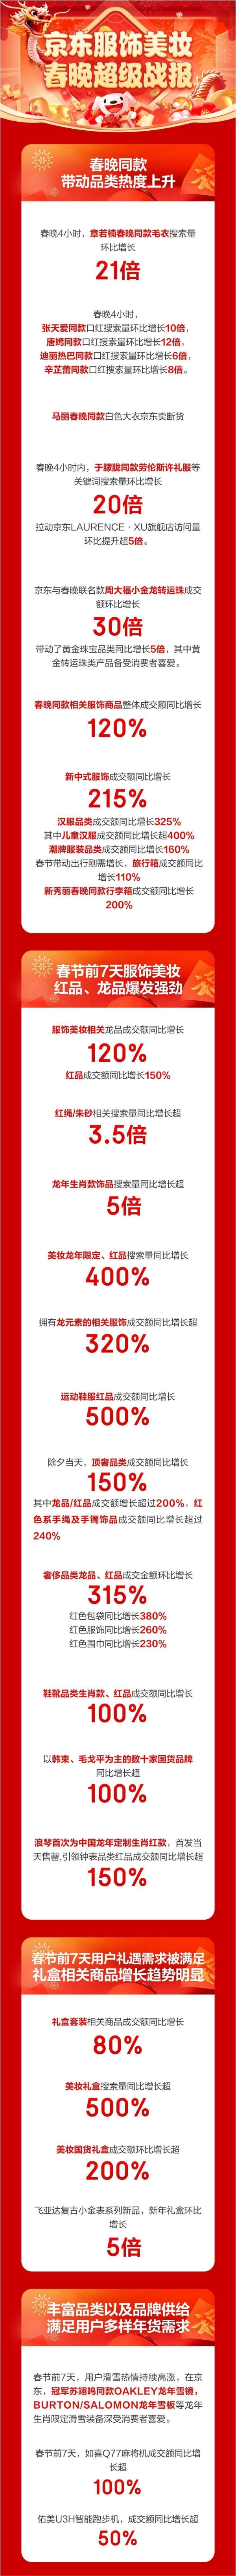 新中式服饰成央视春晚流行风向标 京东汉服品类成交额同比增长325%